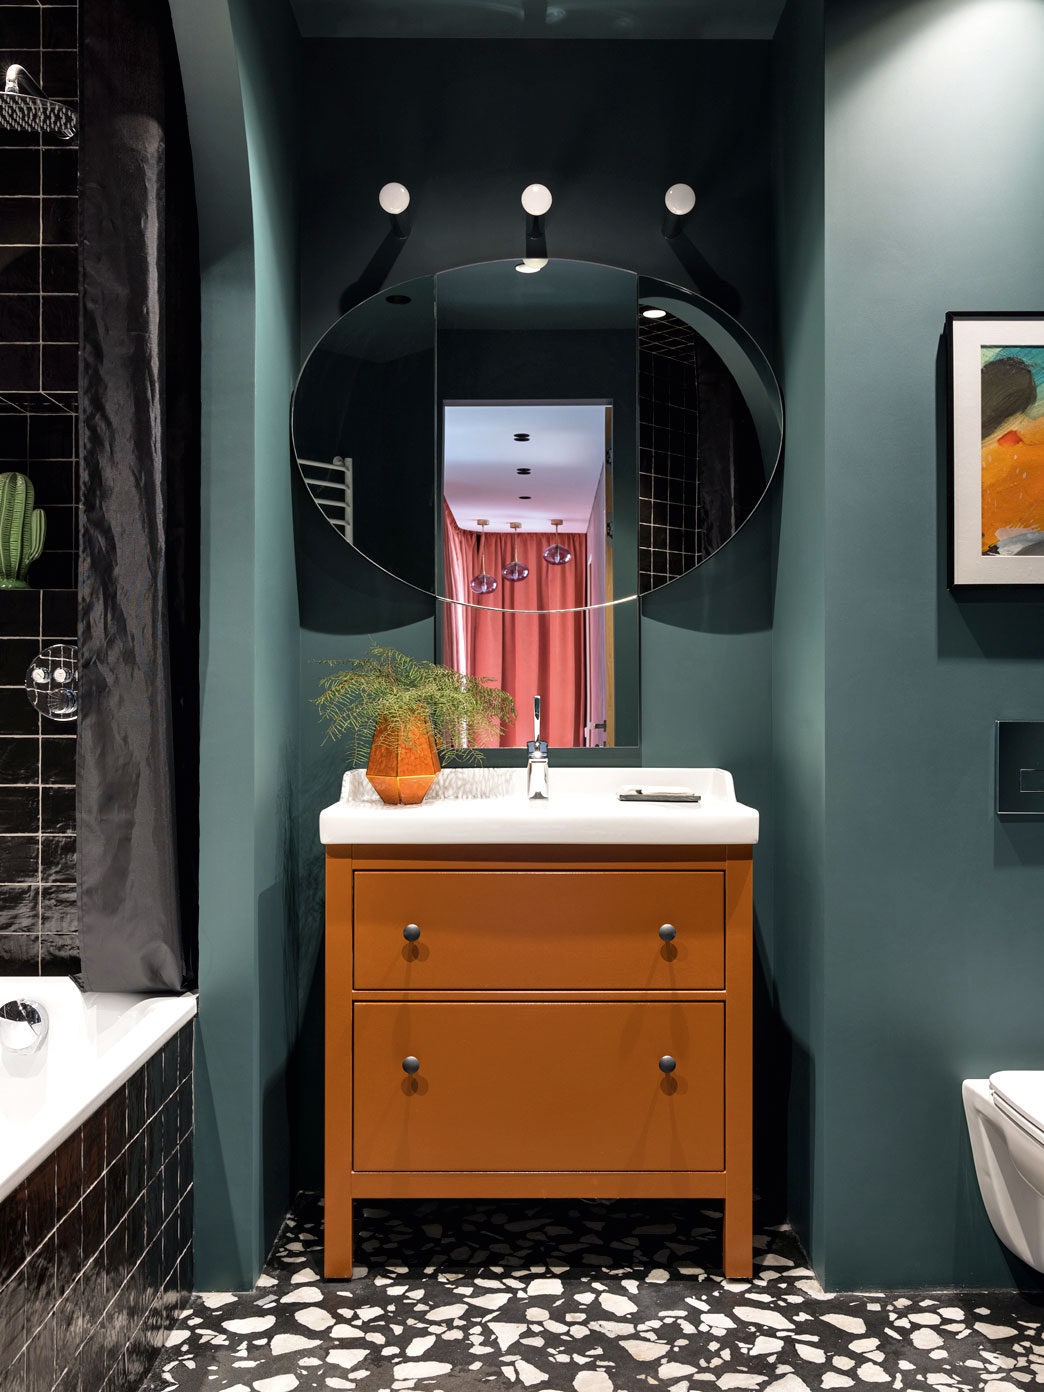 Интерьер ванной комнаты по проекту Анастасии Брандт. Фото Михаил Лоскутов.